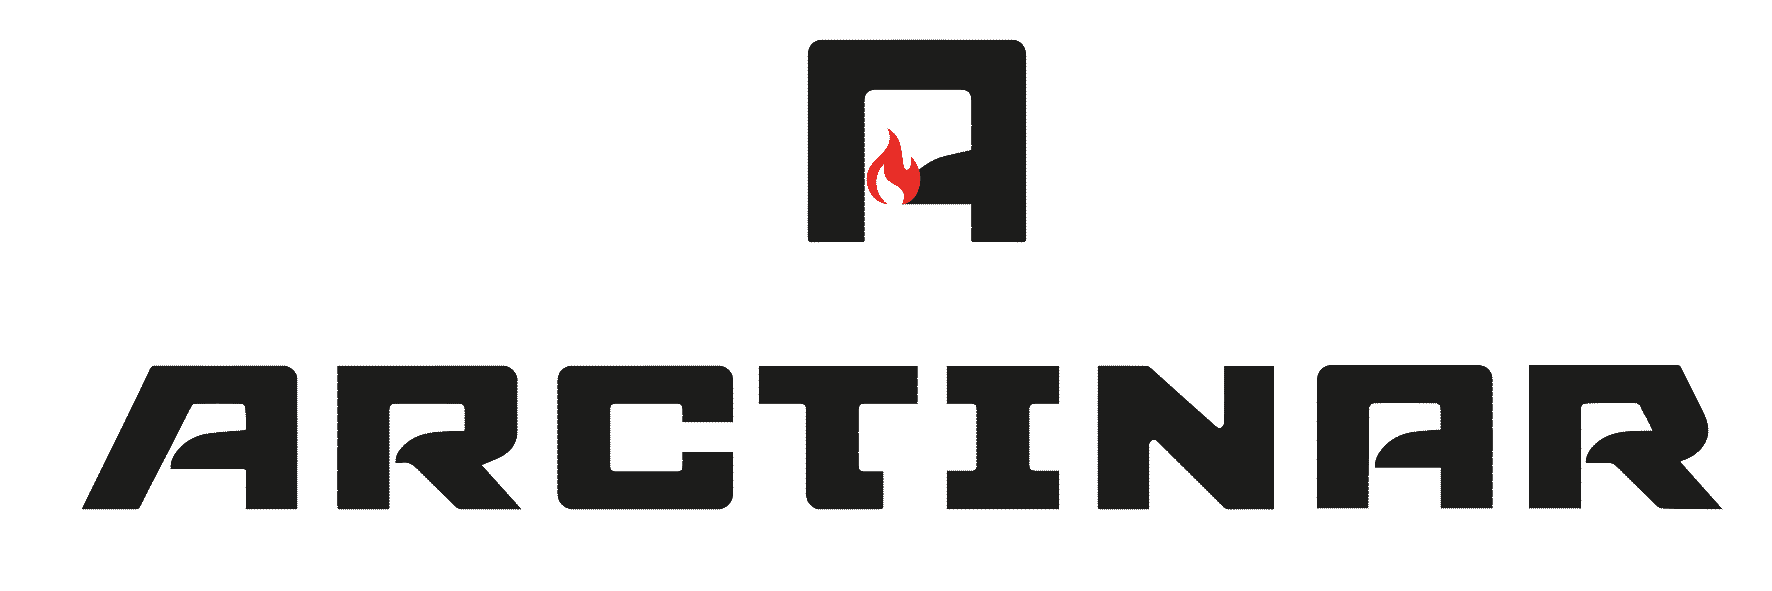 arctinar logo